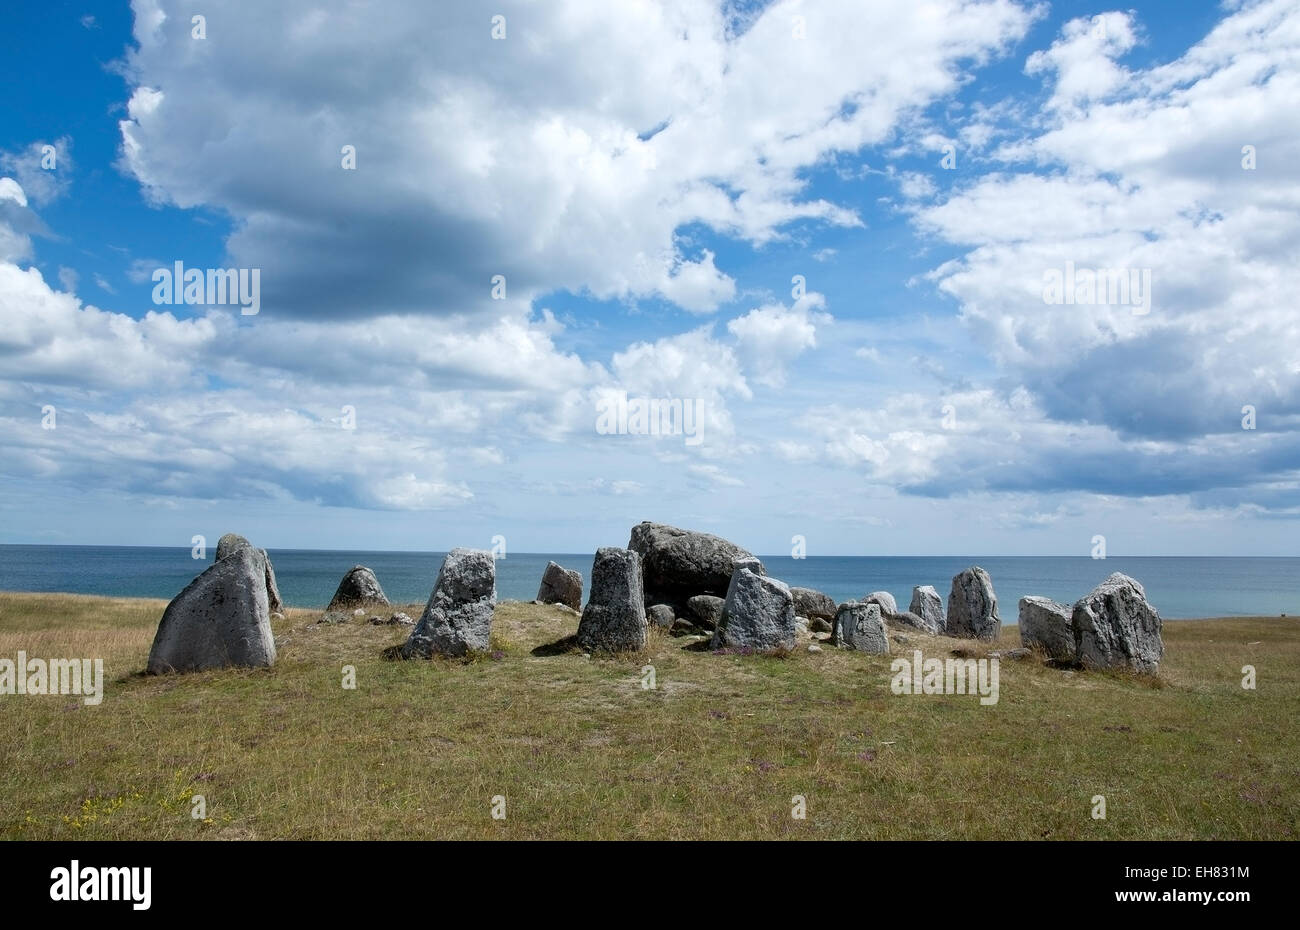 La pierre ancienne structure en Côte d'Azur, la Suède en juin. Banque D'Images